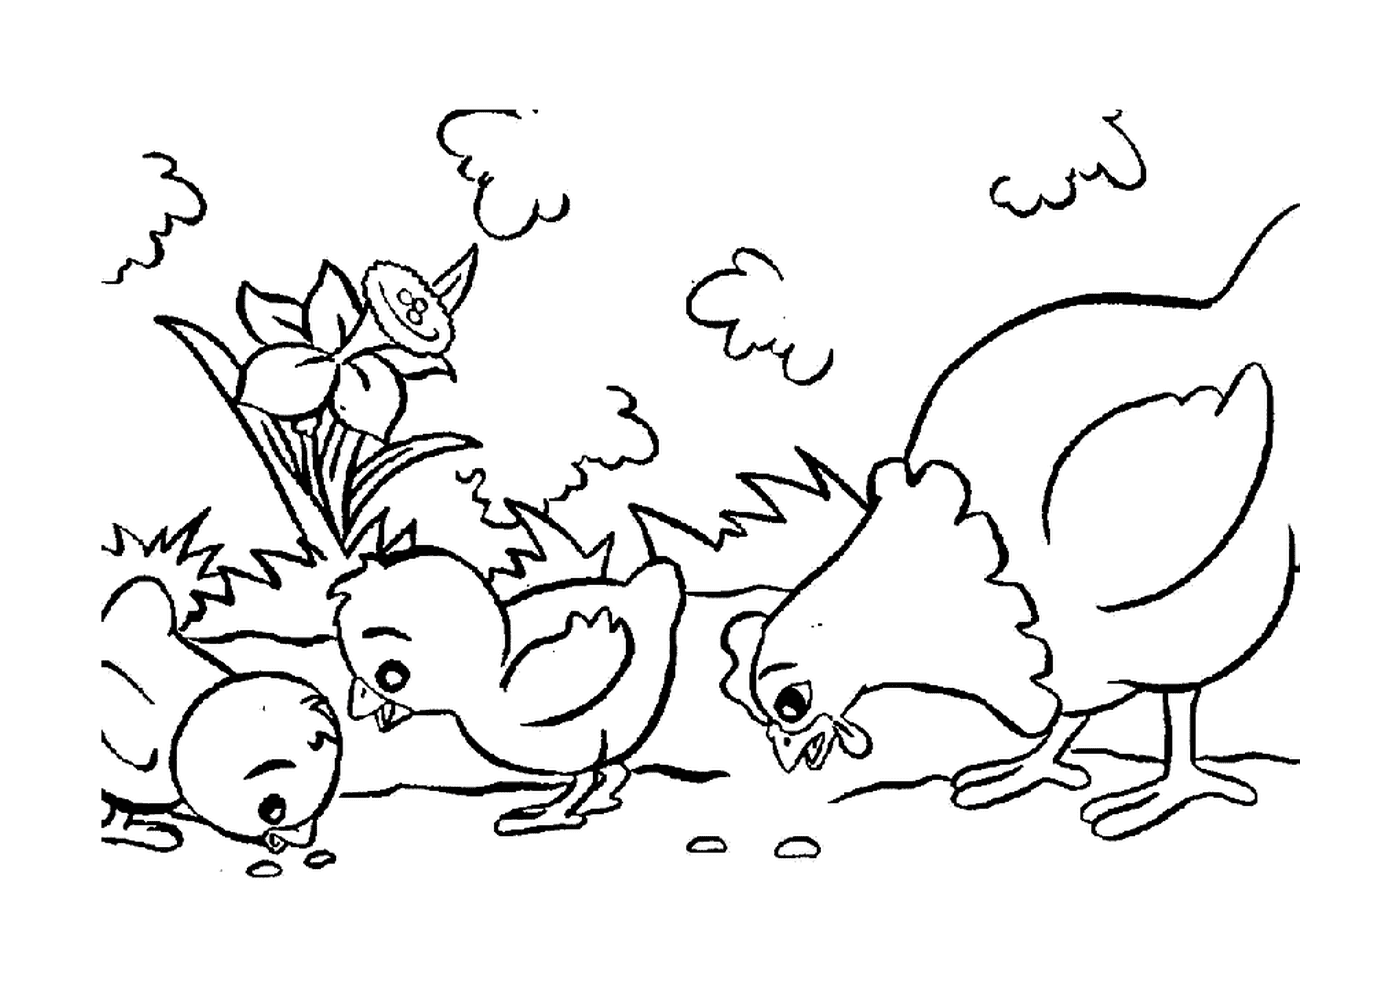   Poules piquant joyeusement ensemble 